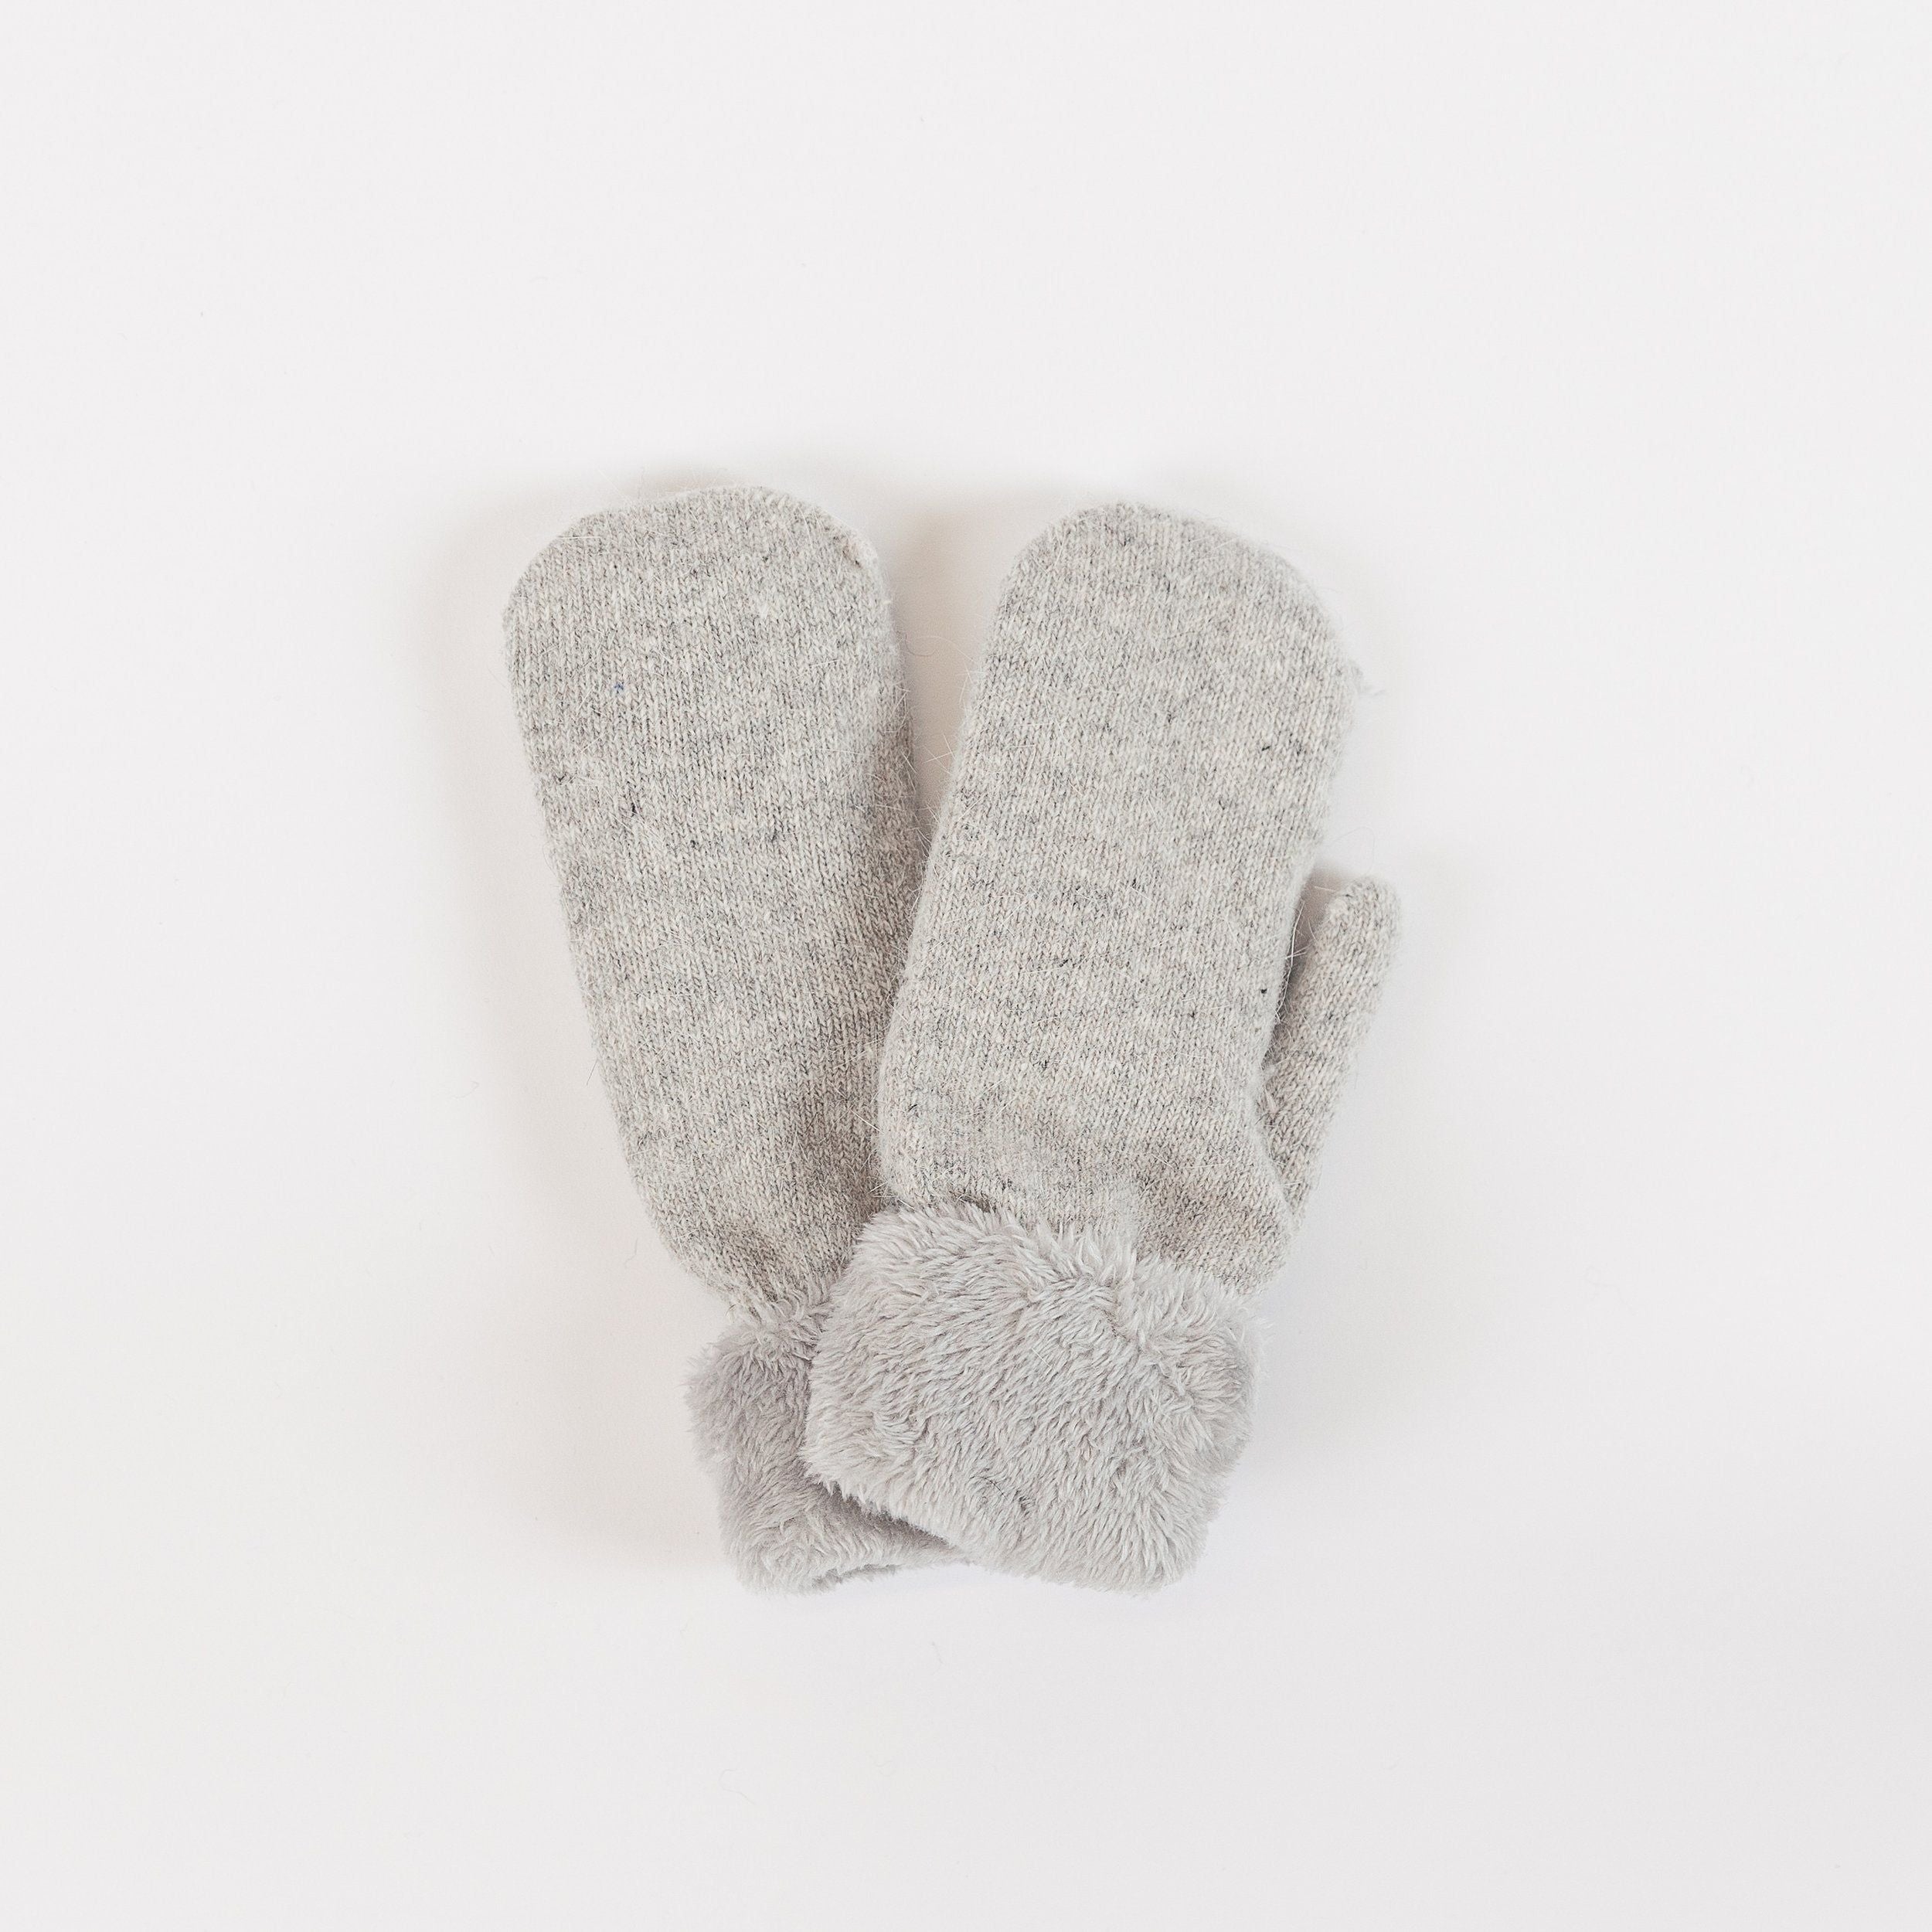 Lyla & Luxe - Knit Mittens in Light Grey